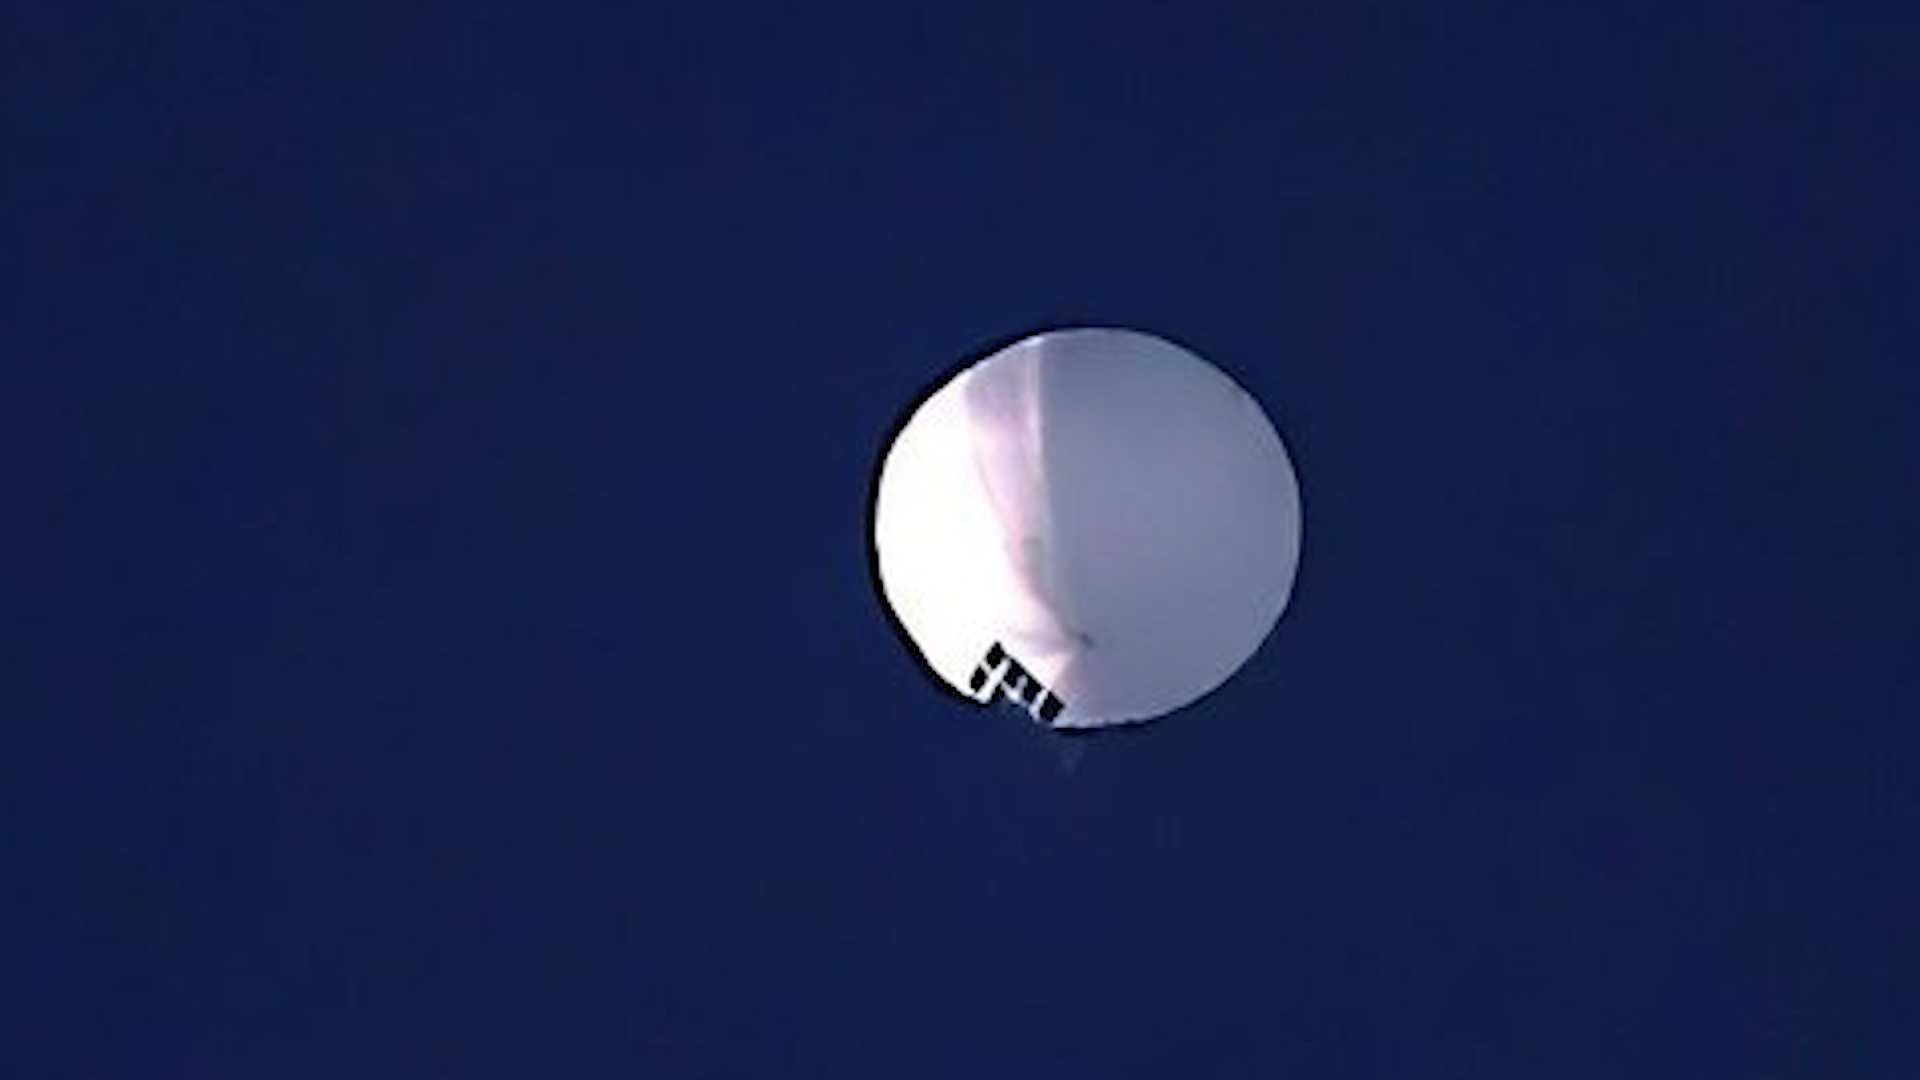 Trung Quốc thừa nhận về khinh khí cầu 'do thám' ở Mỹ - Ảnh 1.